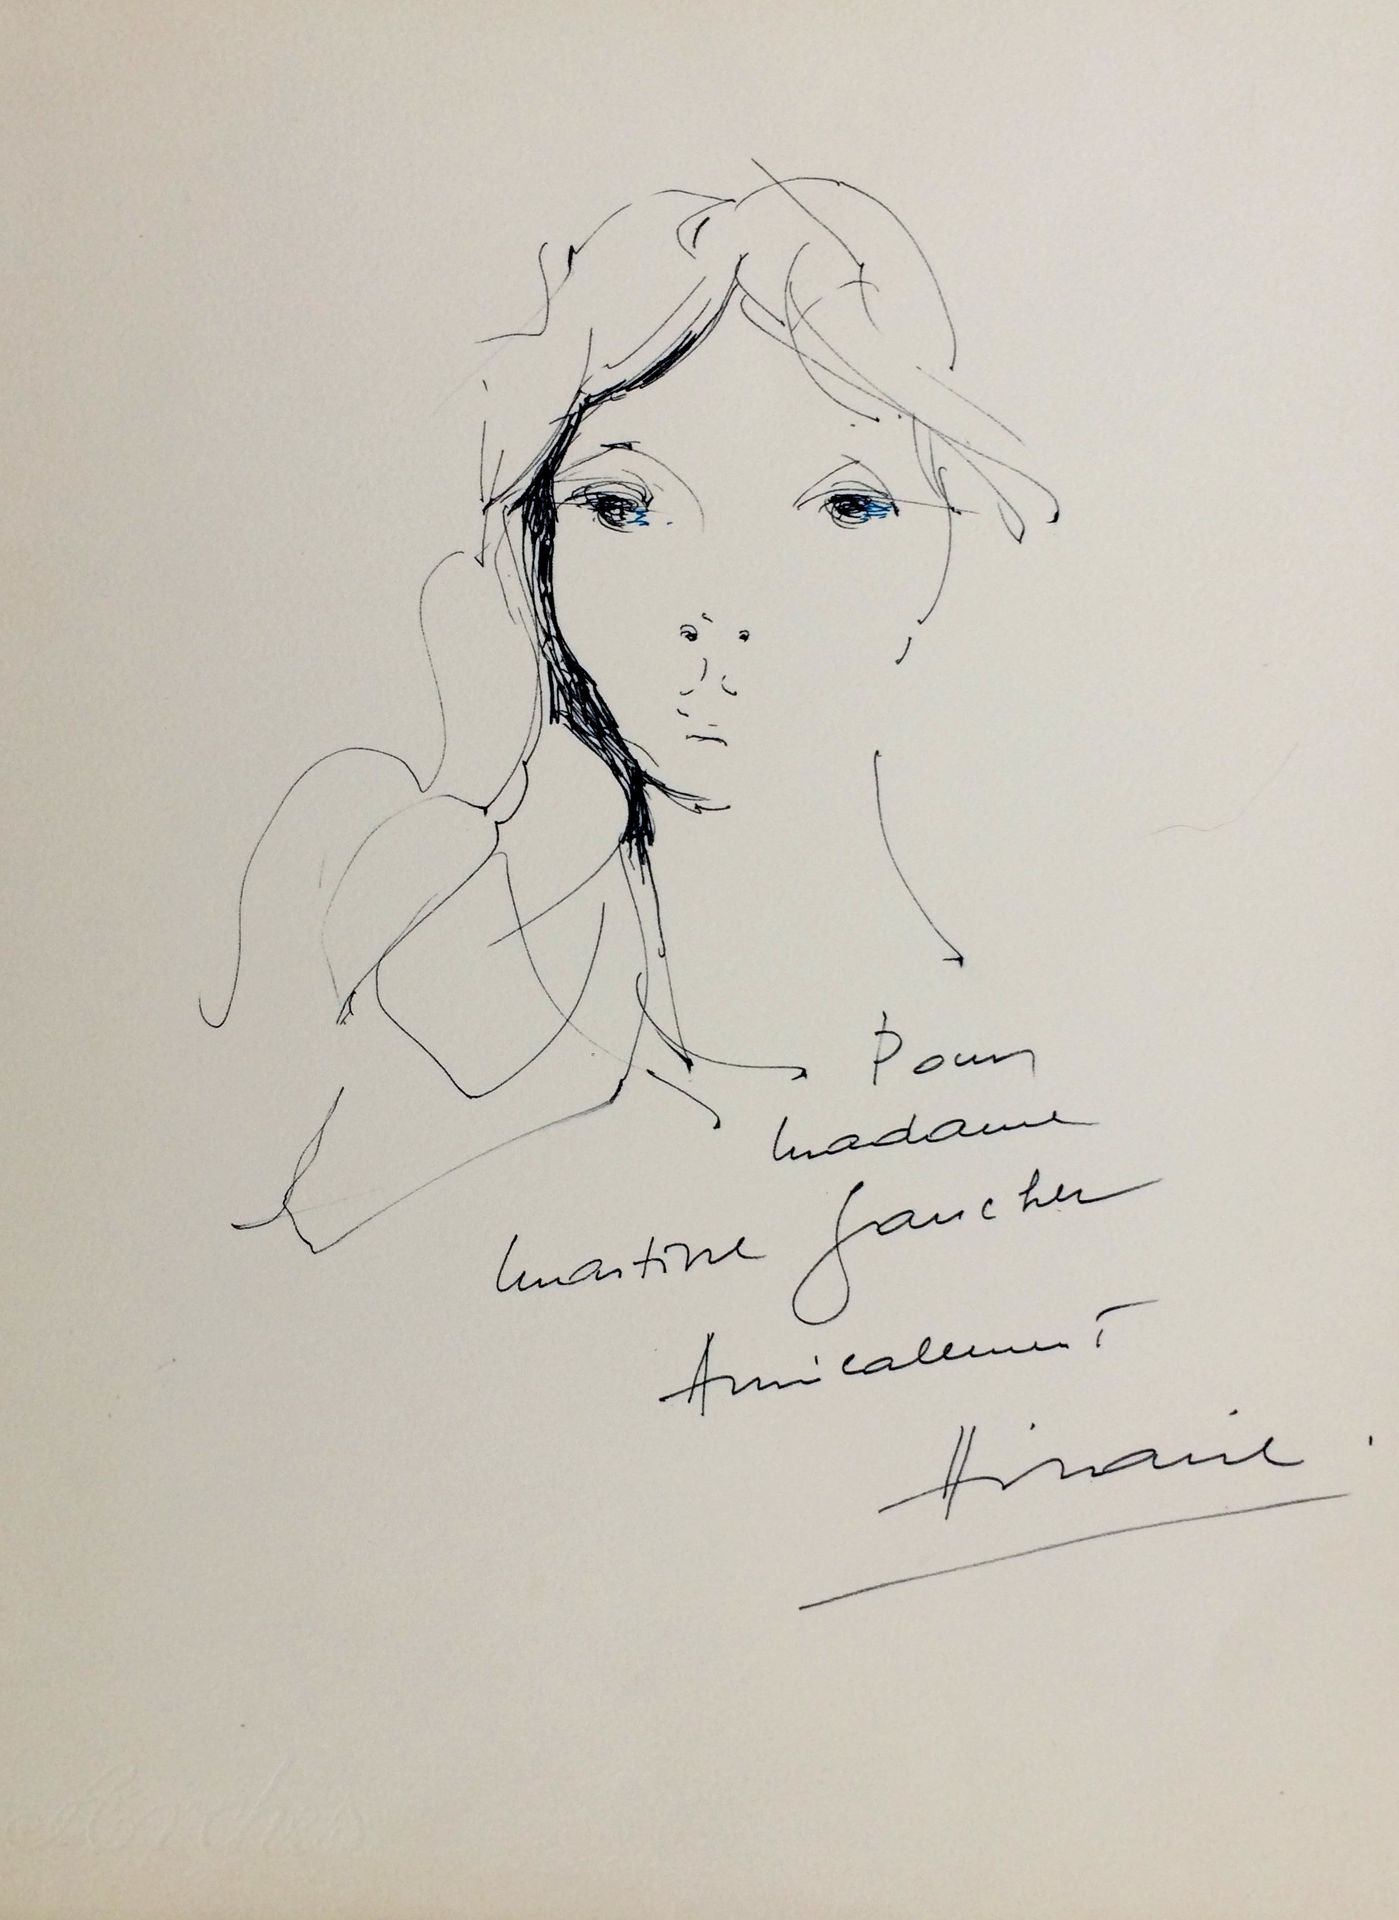 Camille HILAIRE Camille HILAIRE

Portrait, 1972

 

 Dessin original à l'encre s&hellip;